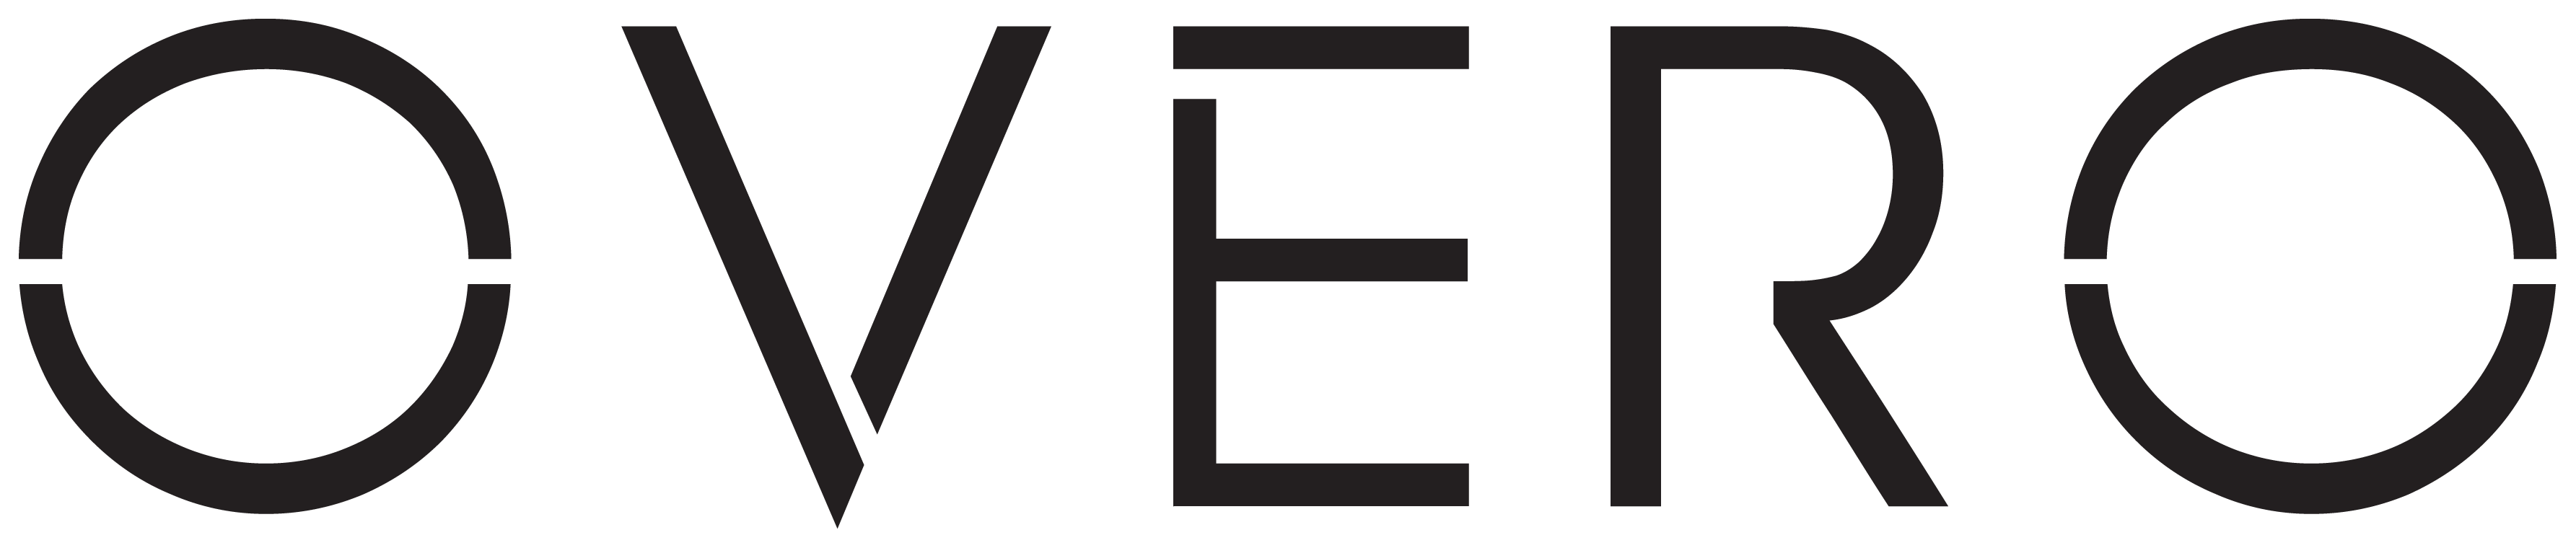 Logo Overo